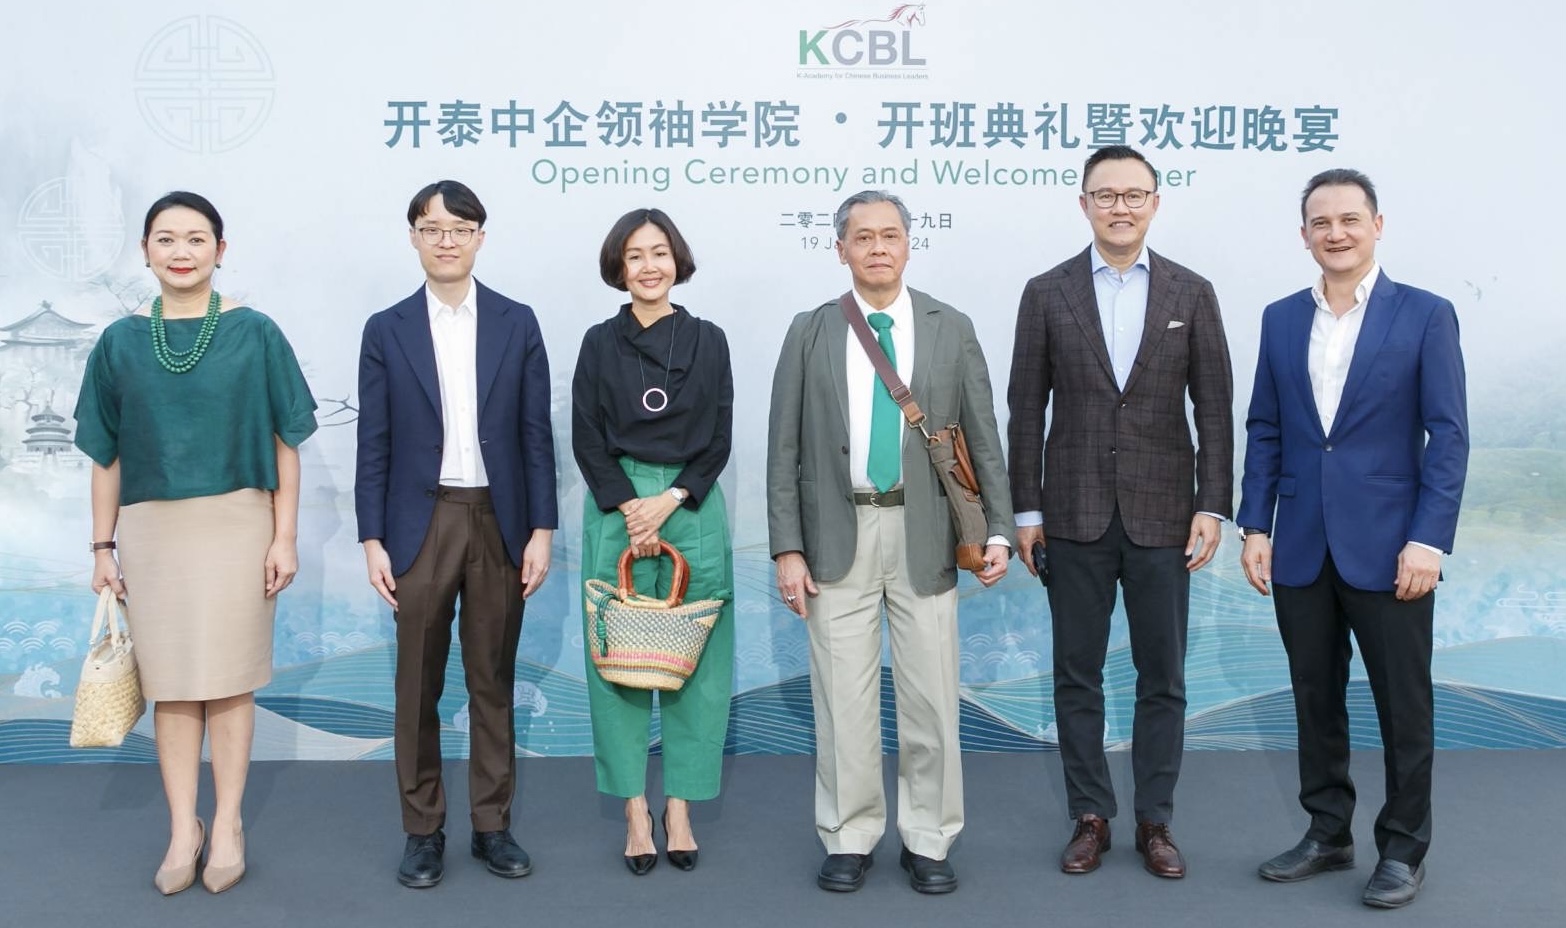 กสิกรไทยเปิดหลักสูตร KCBL รุ่น 1 อบรมผู้บริหาร นักธุรกิจชาวจีนรุ่นใหม่ต่อยอดเครือข่ายการค้าไทย-จีน